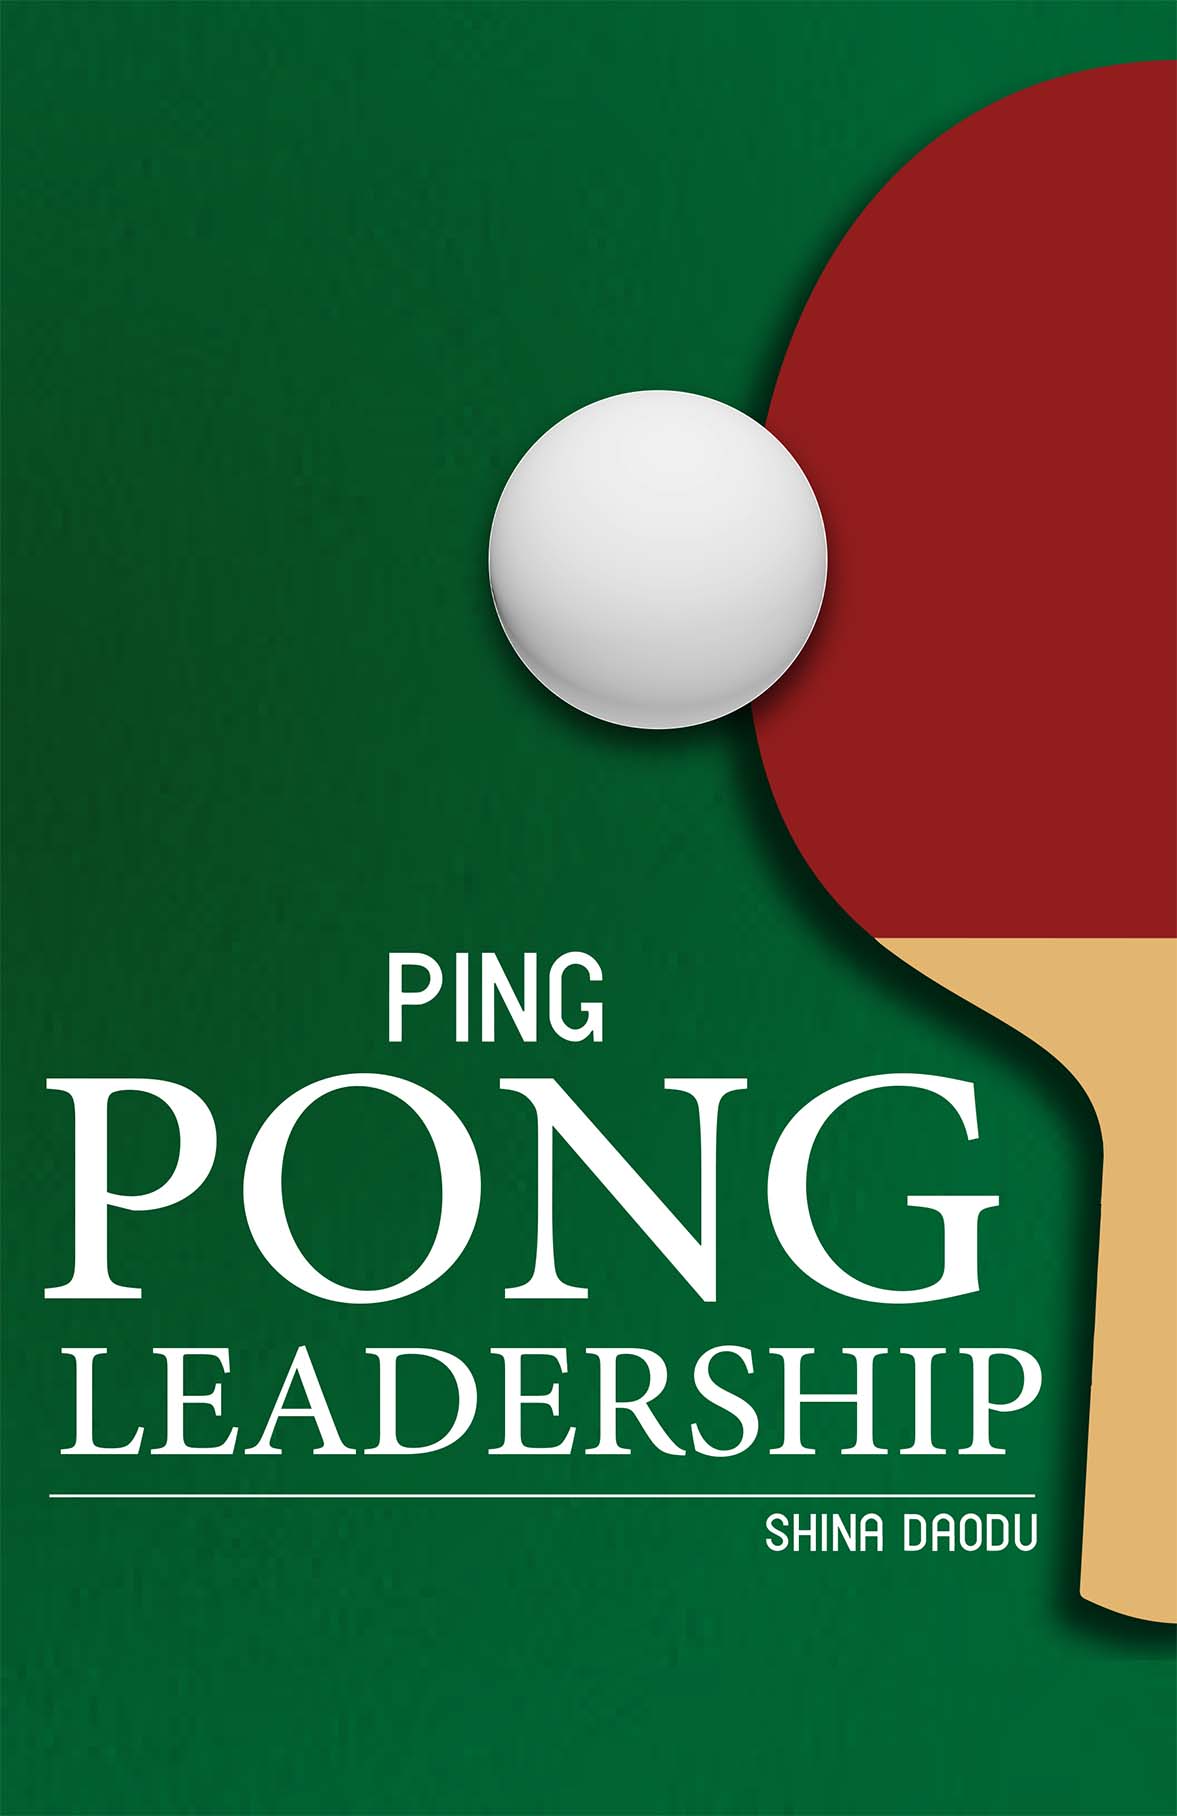 Book: Ping Pong Leadership by Shina Daodu